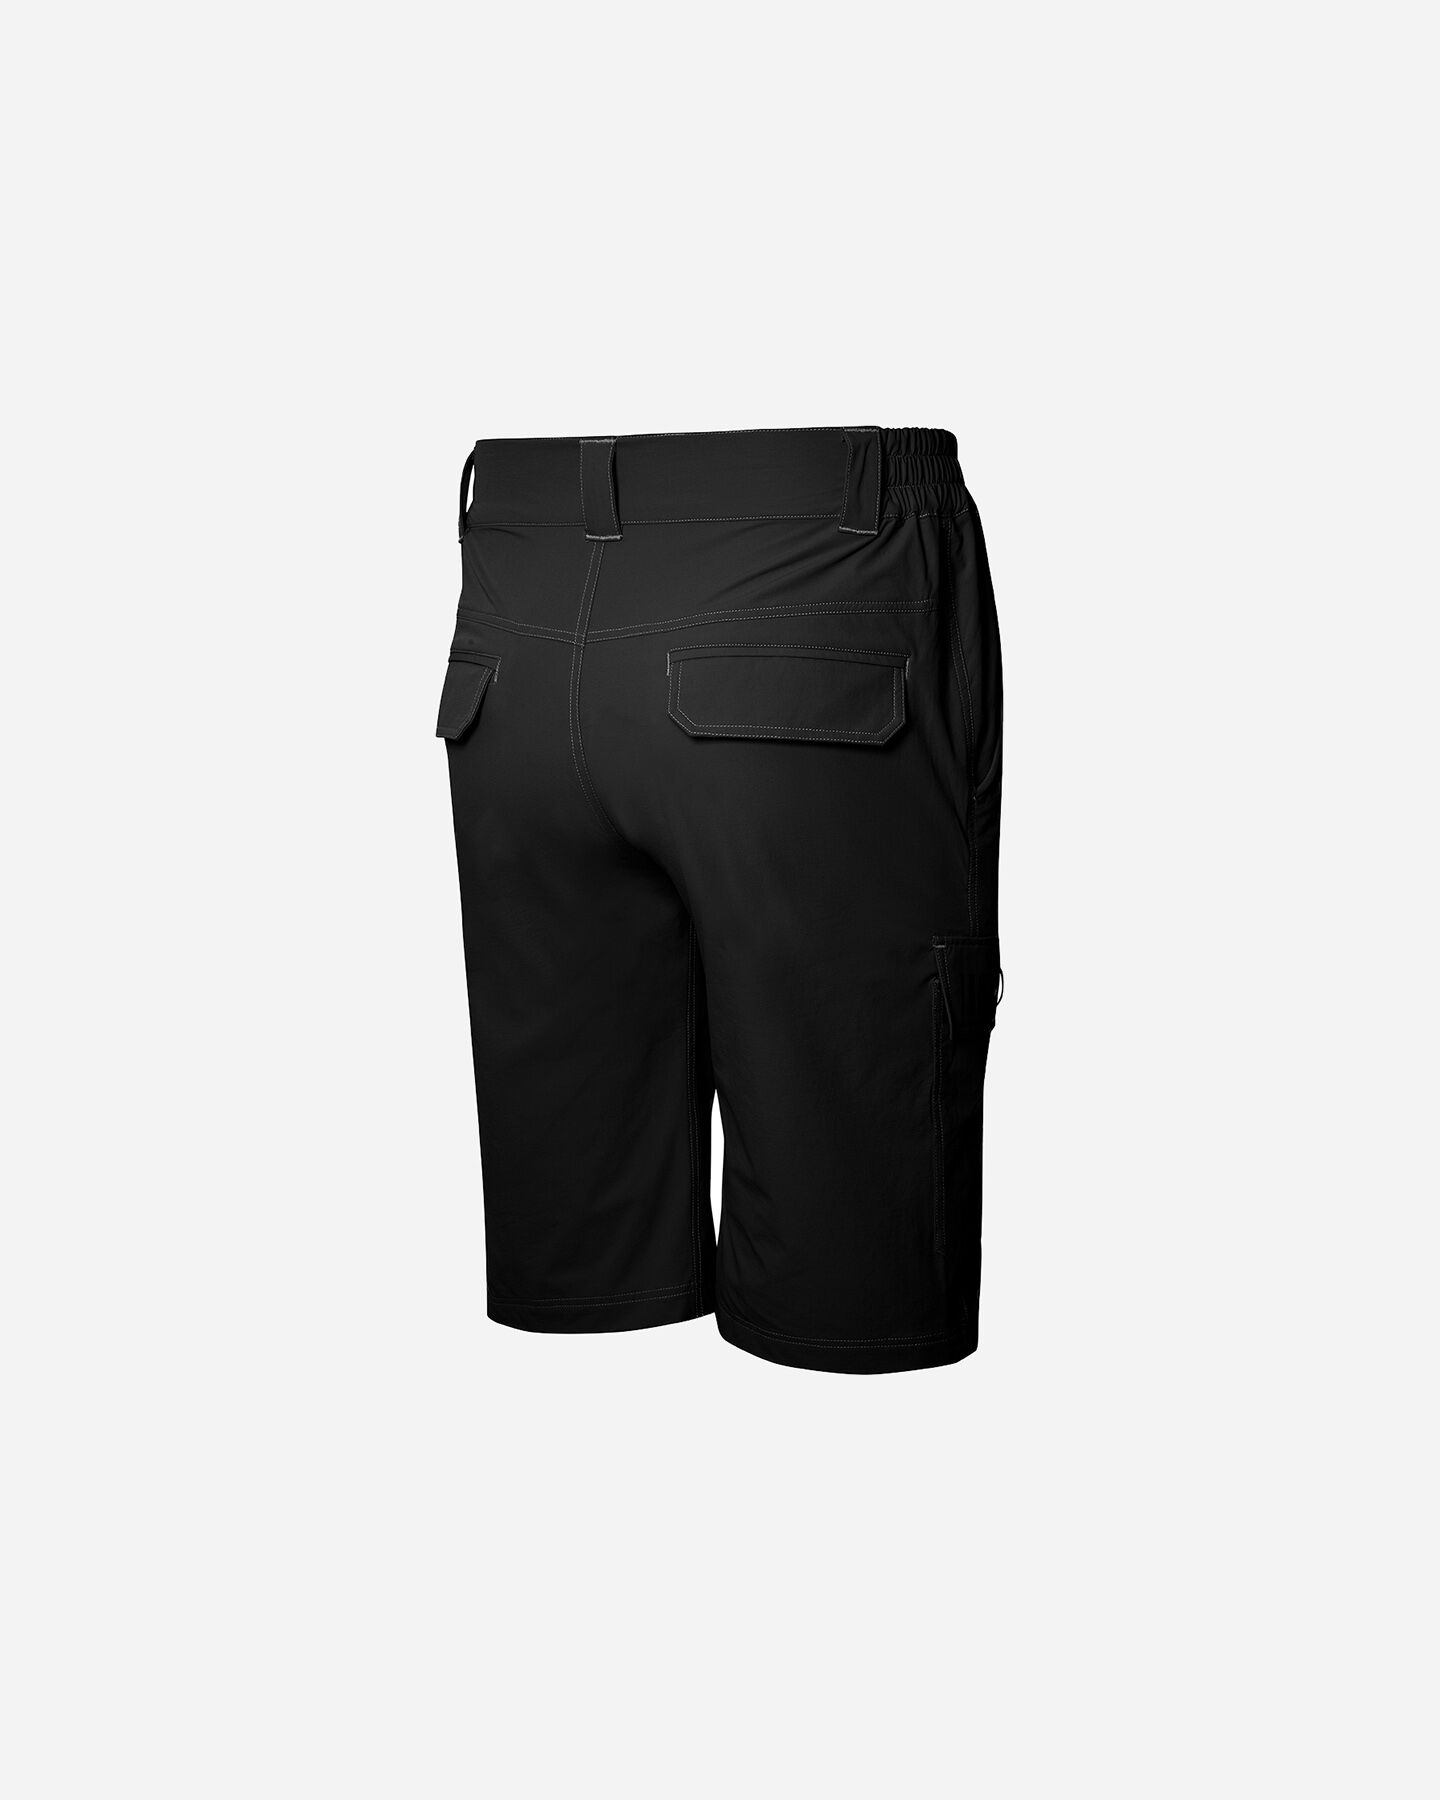  Pantaloncini RH+ CARGO M S4105687|900|S scatto 1